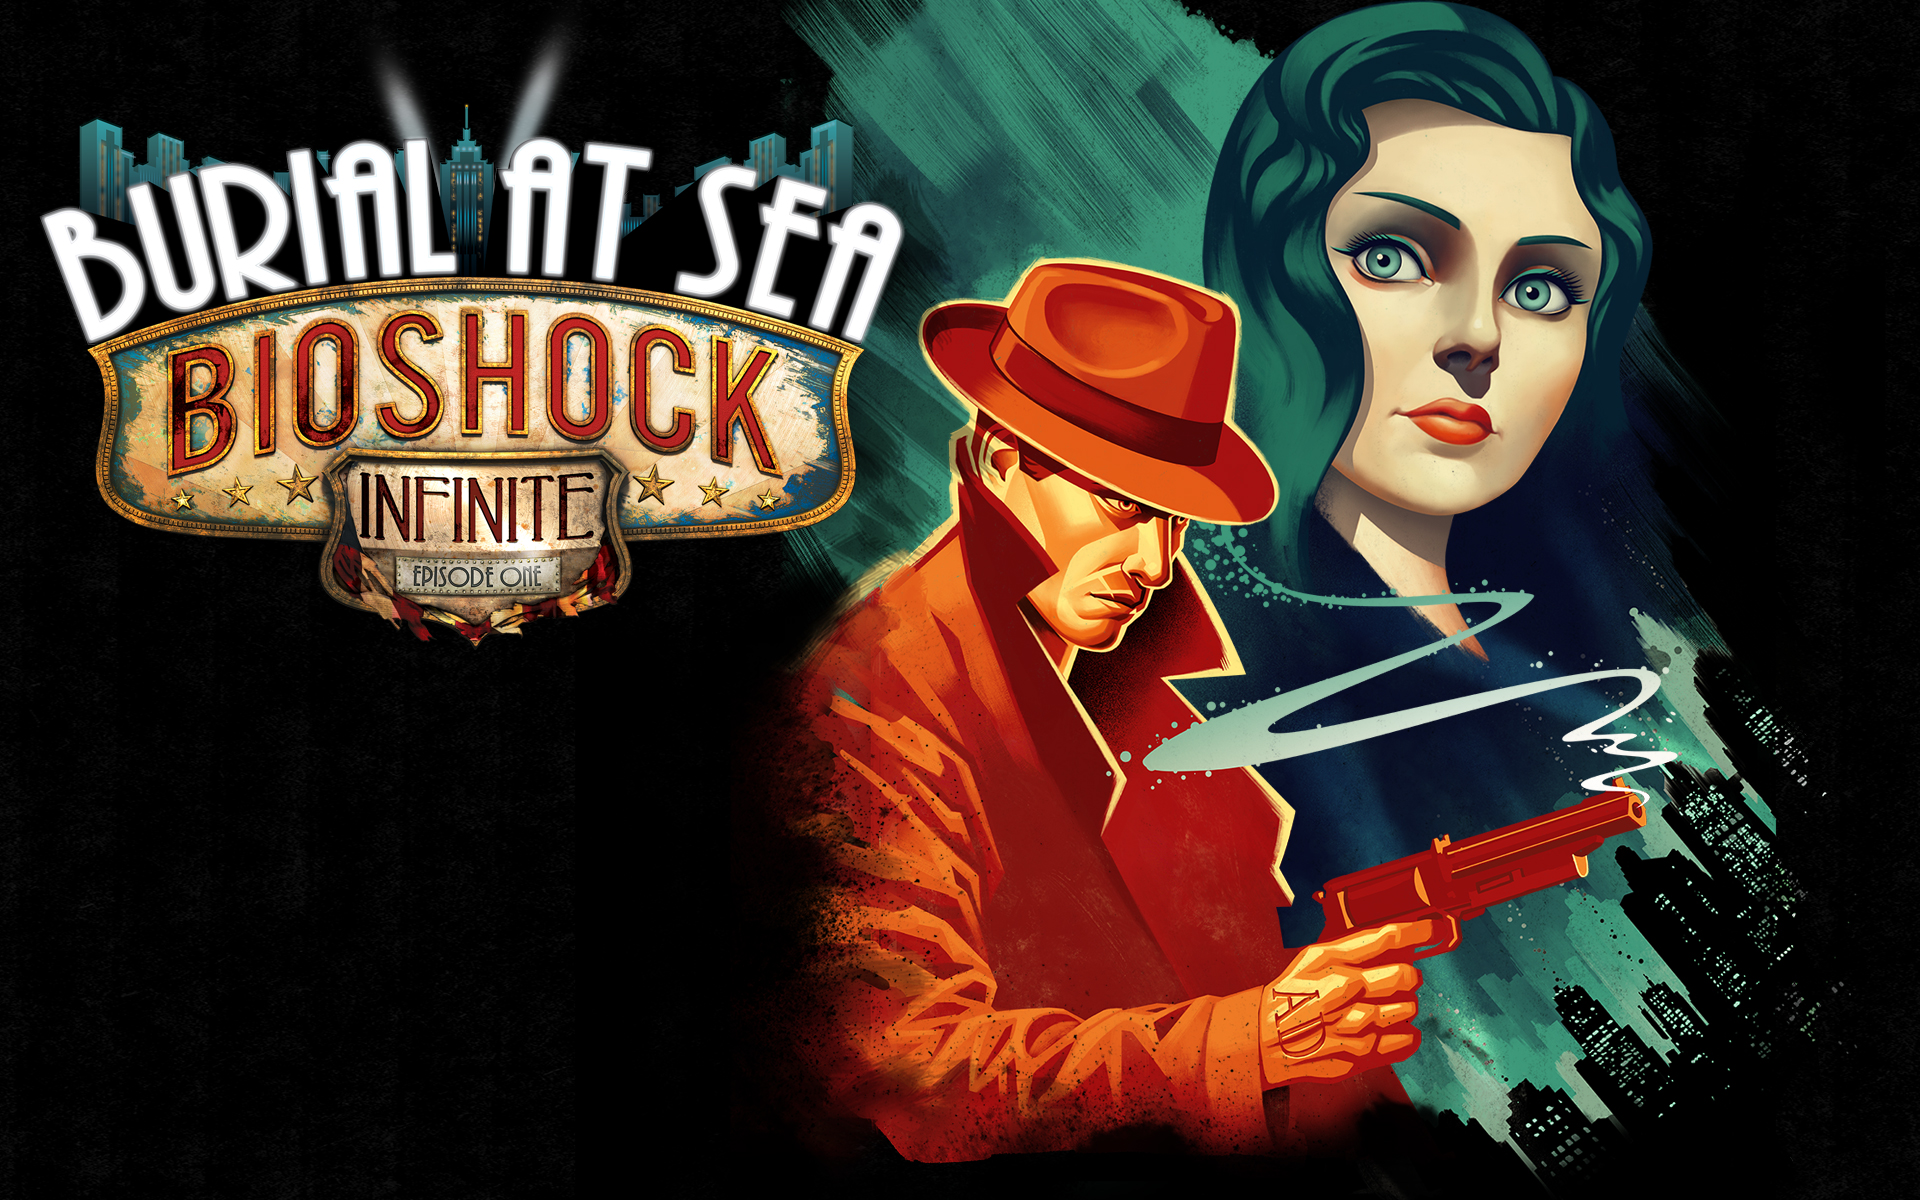 BioShock Infinite: Burial At Sea #14